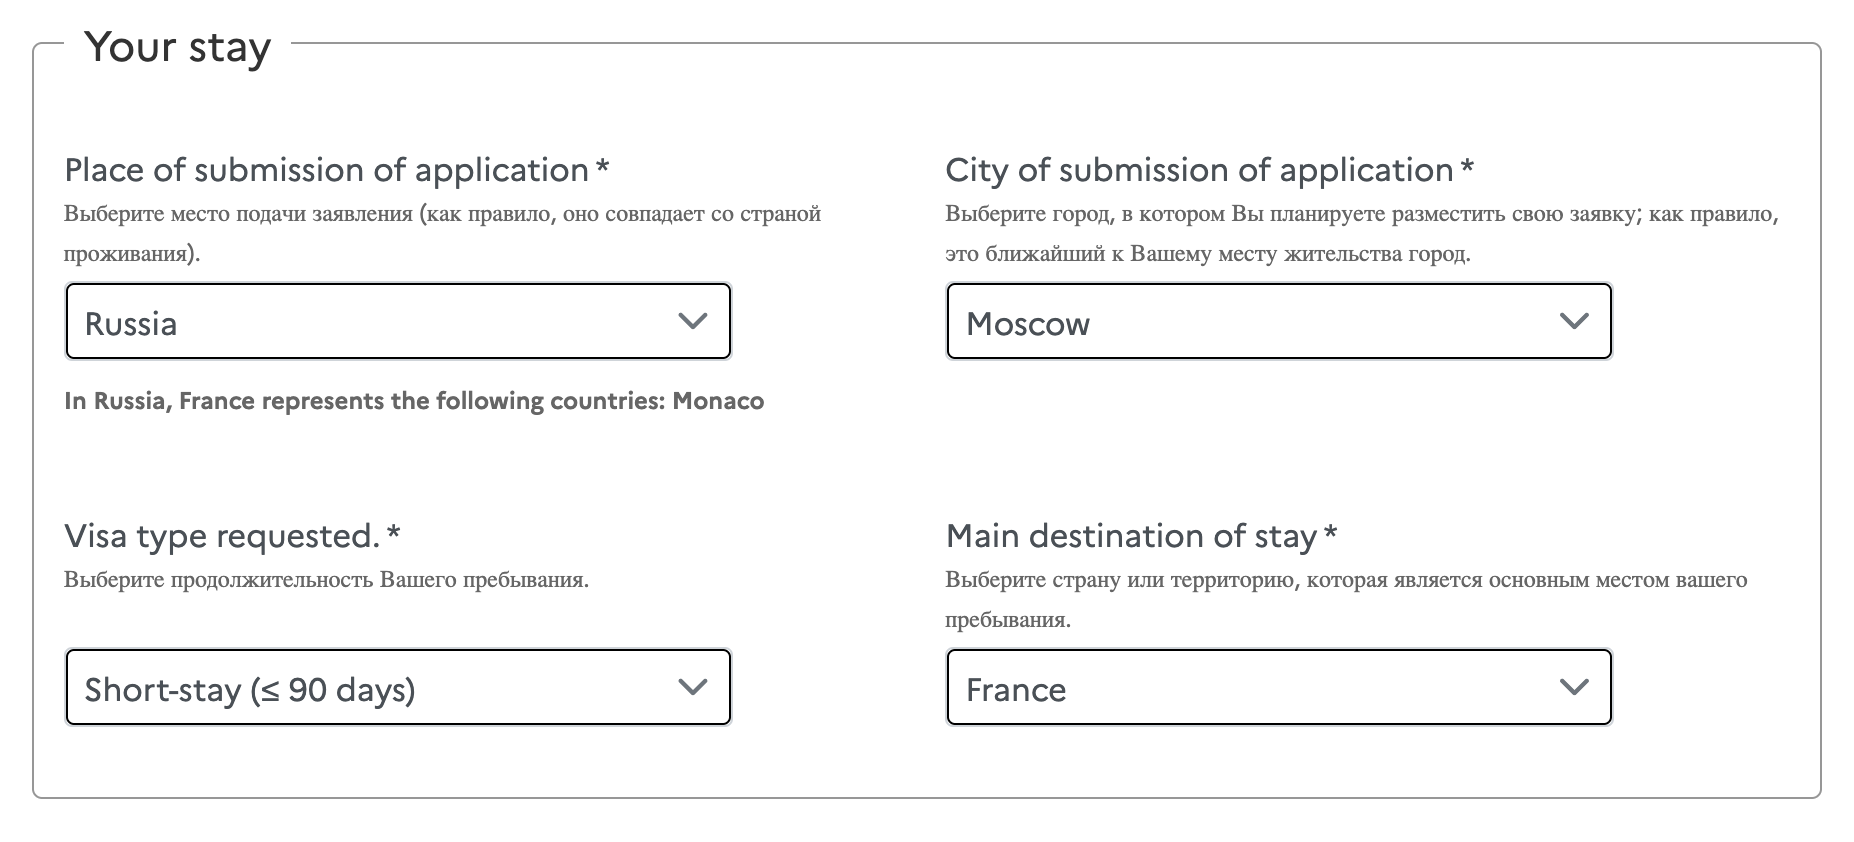 Вопросы в анкете дублируют на русском языке. Источник: connect.france⁠-⁠visas.gouv.fr